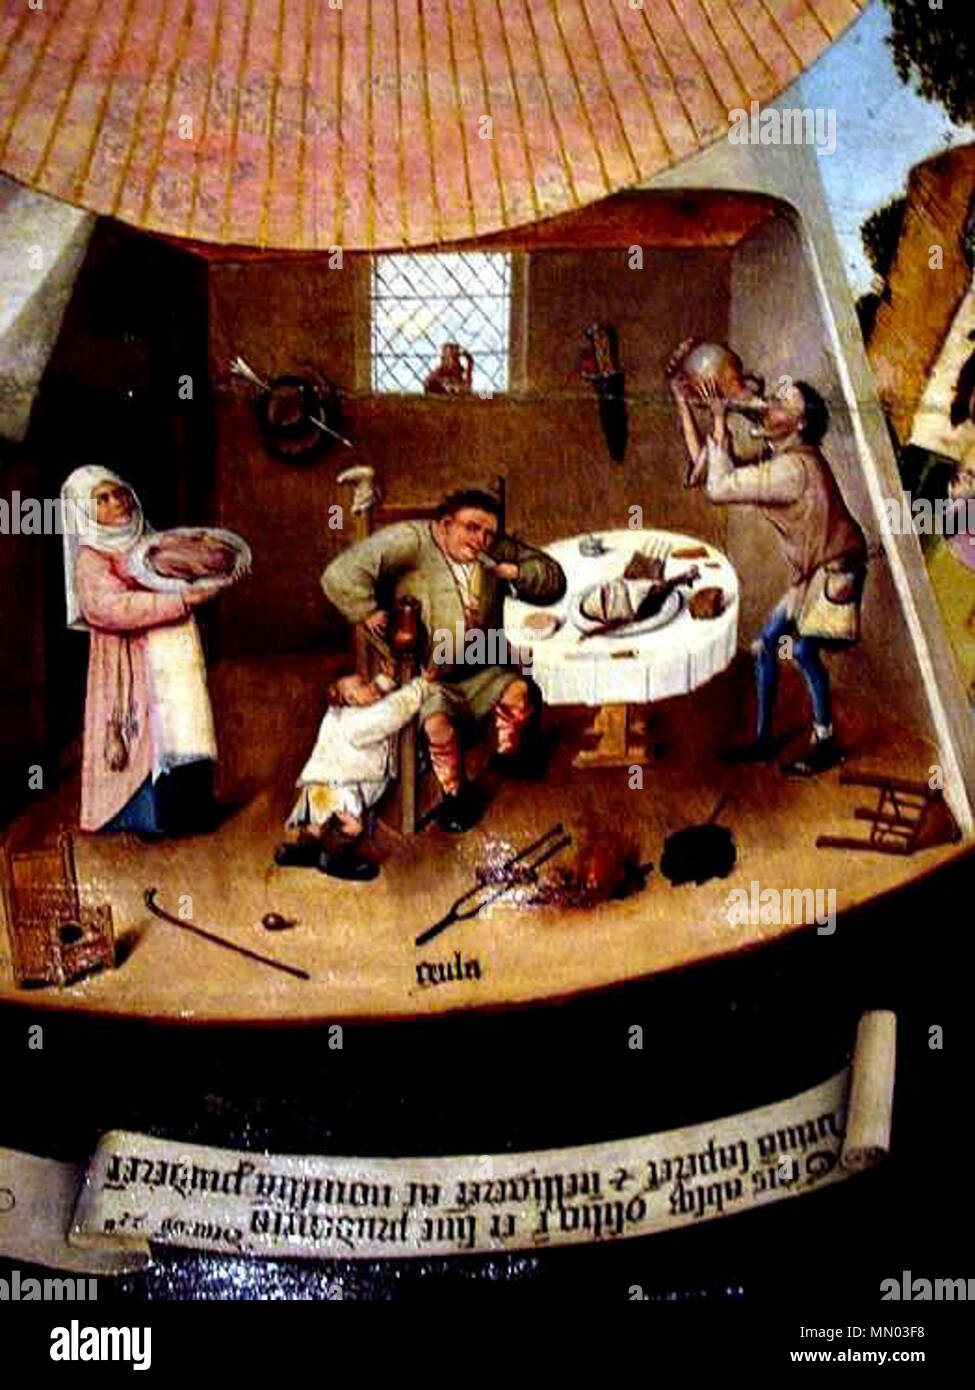 Die sieben Todsünden und die vier letzten Dinge - Völlerei. 1485.  Hieronymus Bosch - Die sieben Todsünden und die vier letzten Dinge -  Völlerei Stockfotografie - Alamy